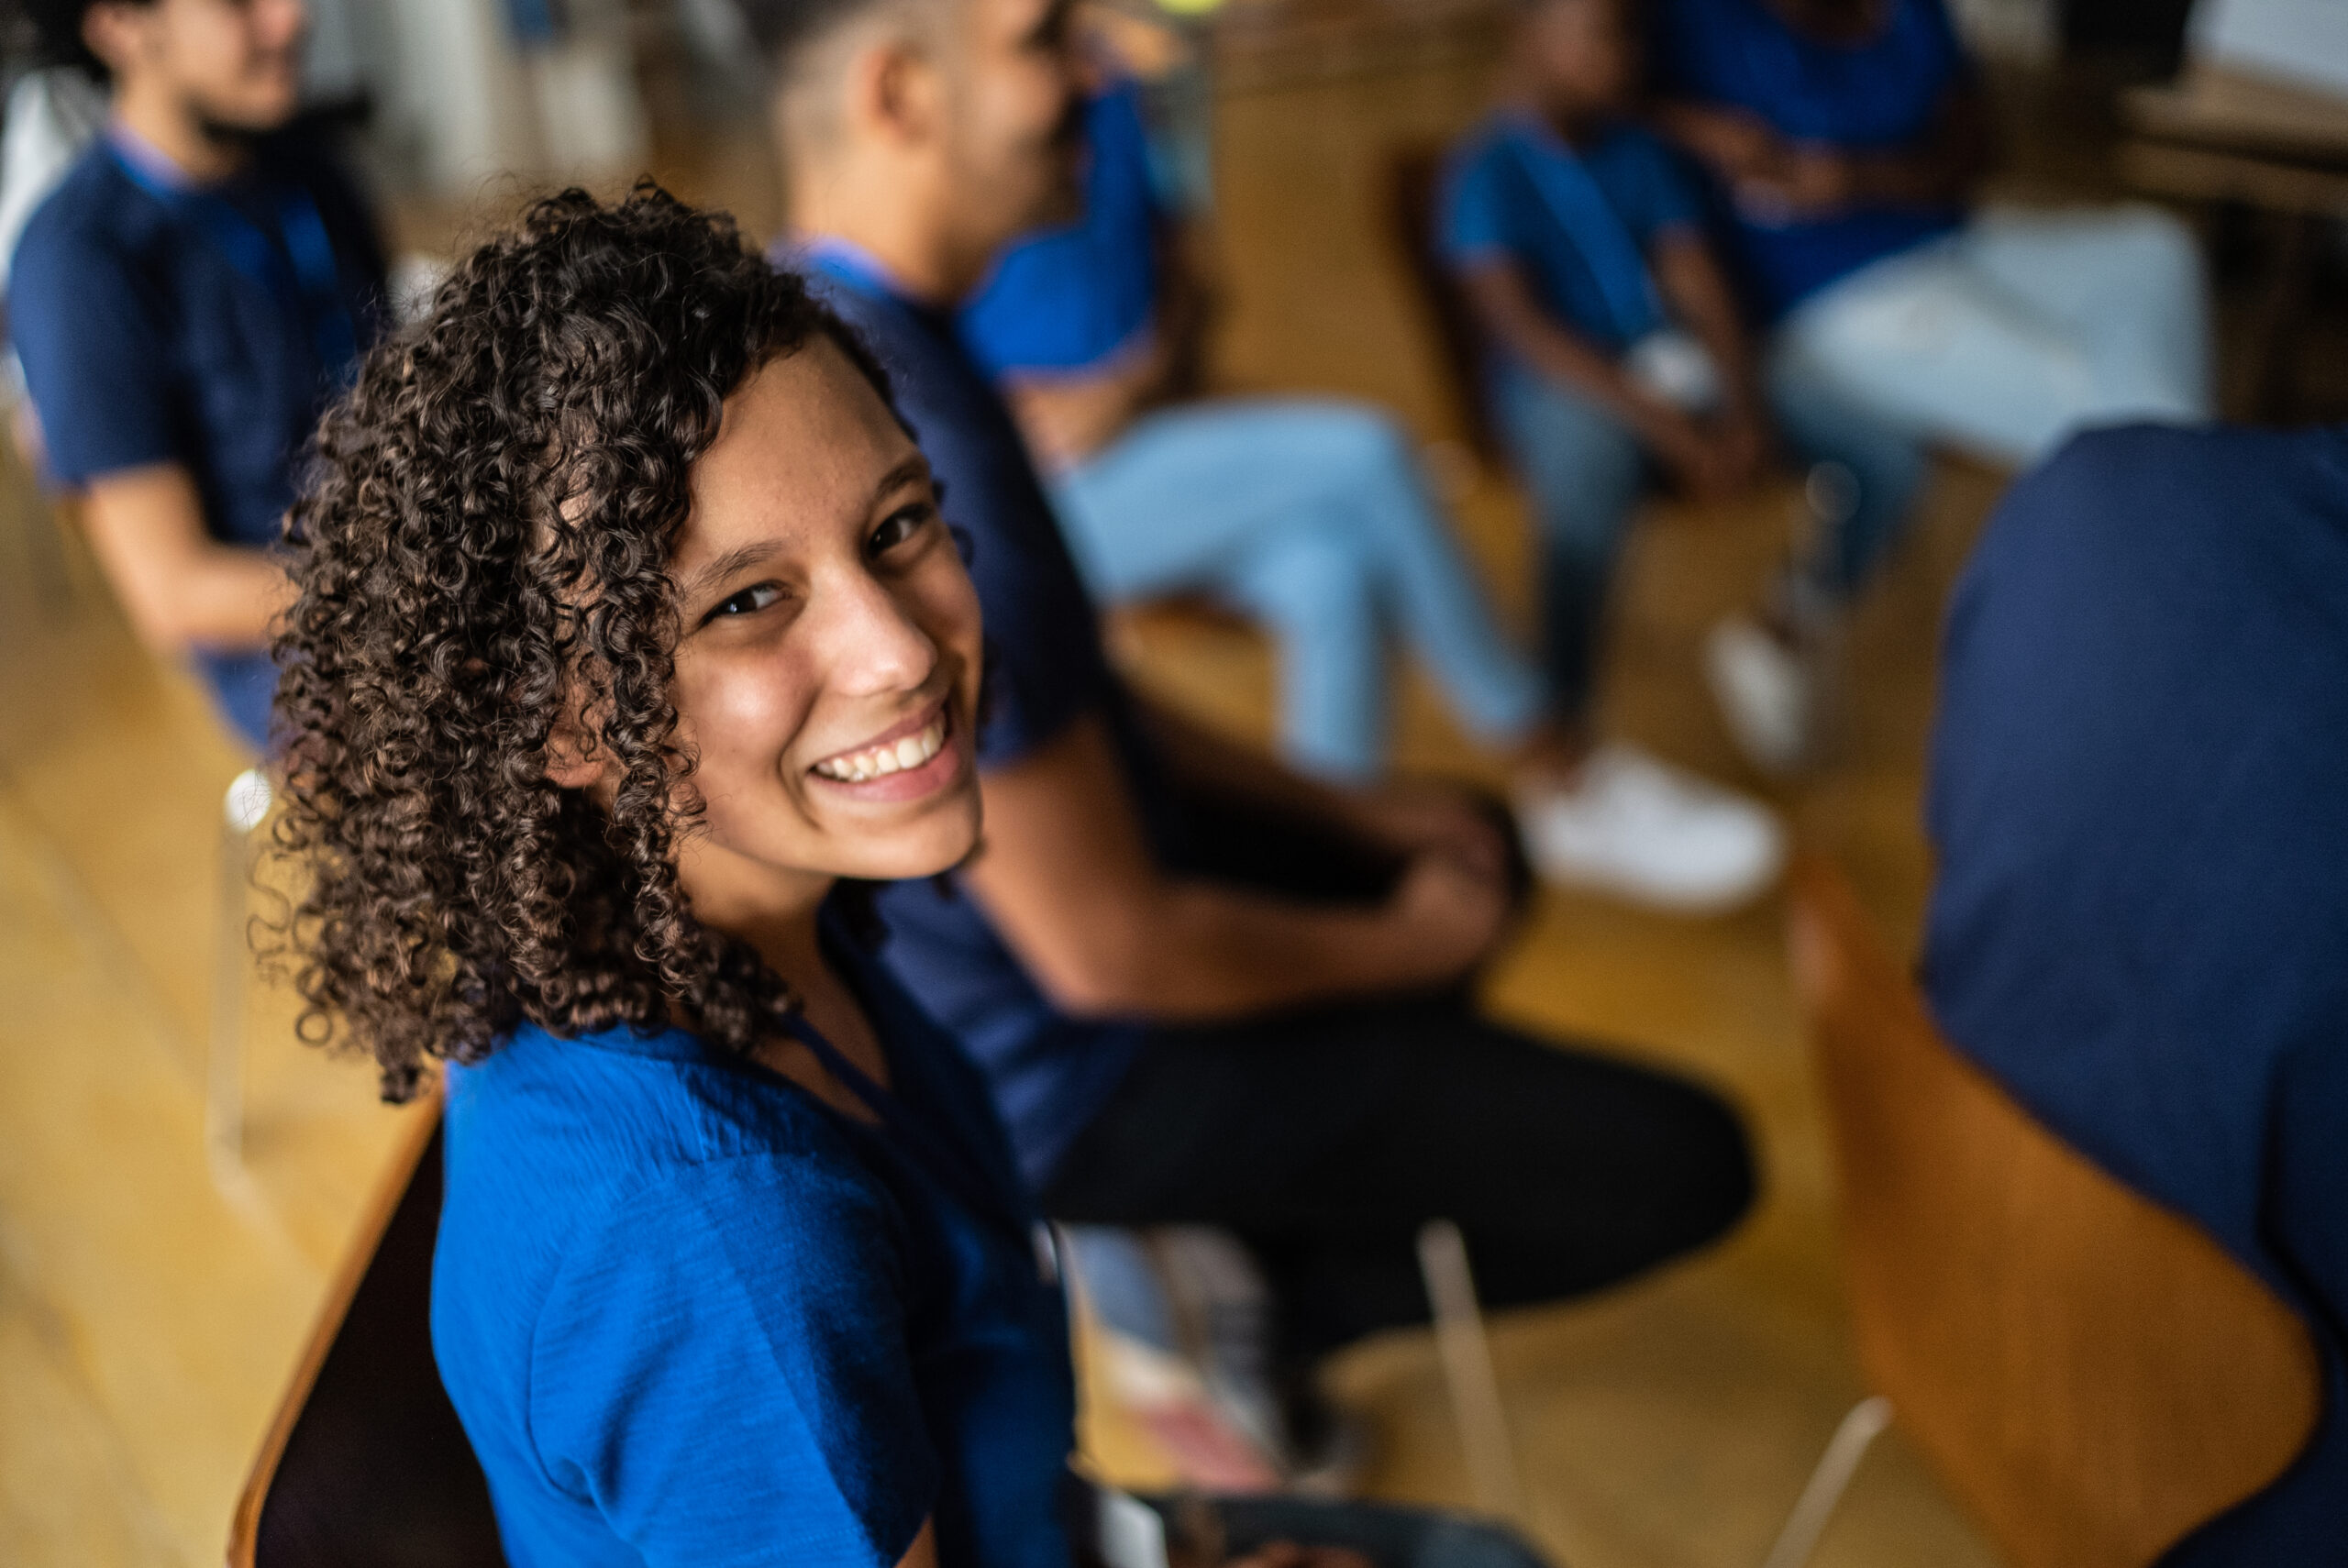 Foto colorida de uma adolescente em uma reunião escolar. Ela é negra, possui os cabelos cacheados, usa uniforme azul e sorri.